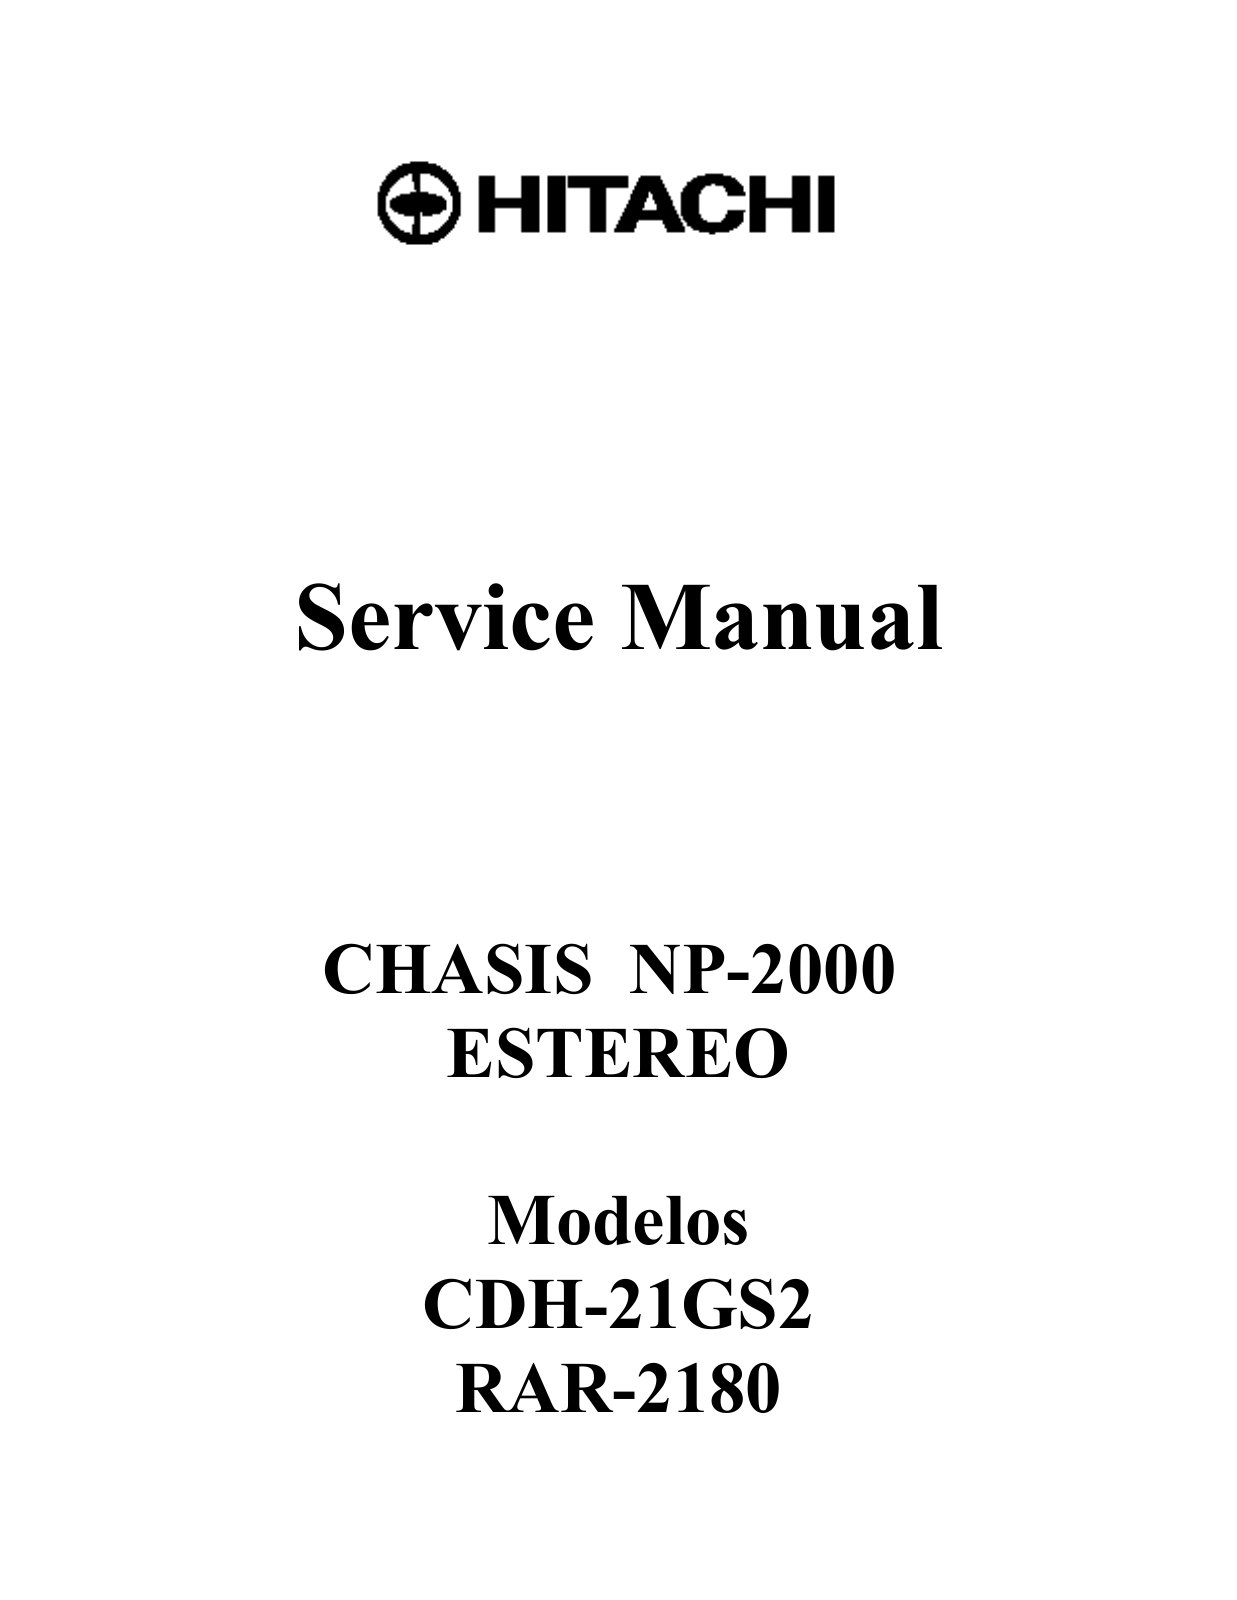 Hitachi CDH-21GS2, RAR-2180 Schematic